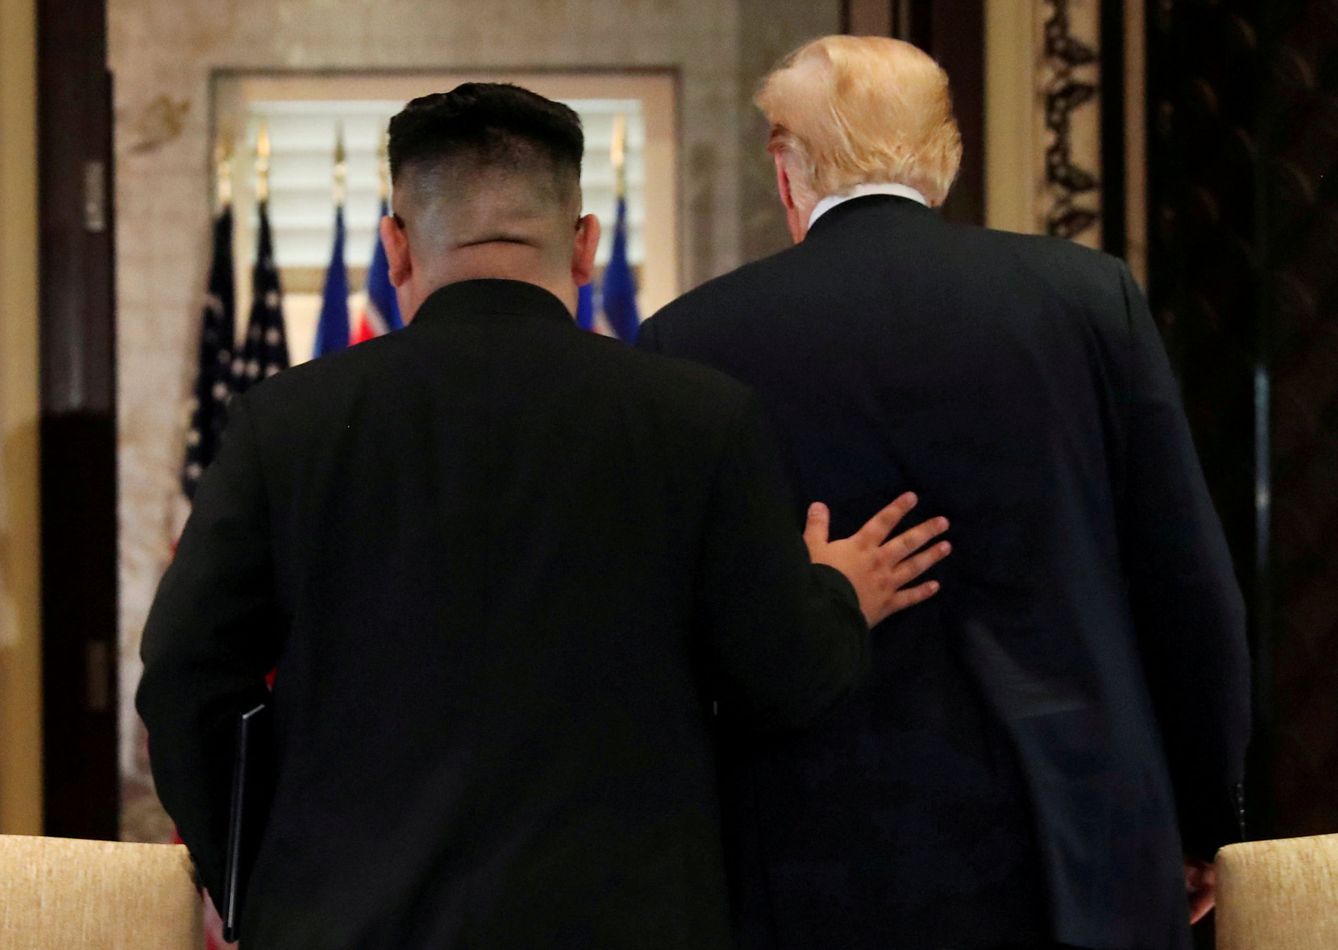 Kim Jong-un acompaña a Donald Trump a la salida tras su encuentro en Singapur, el 12 de junio de 2018. (Reuters)